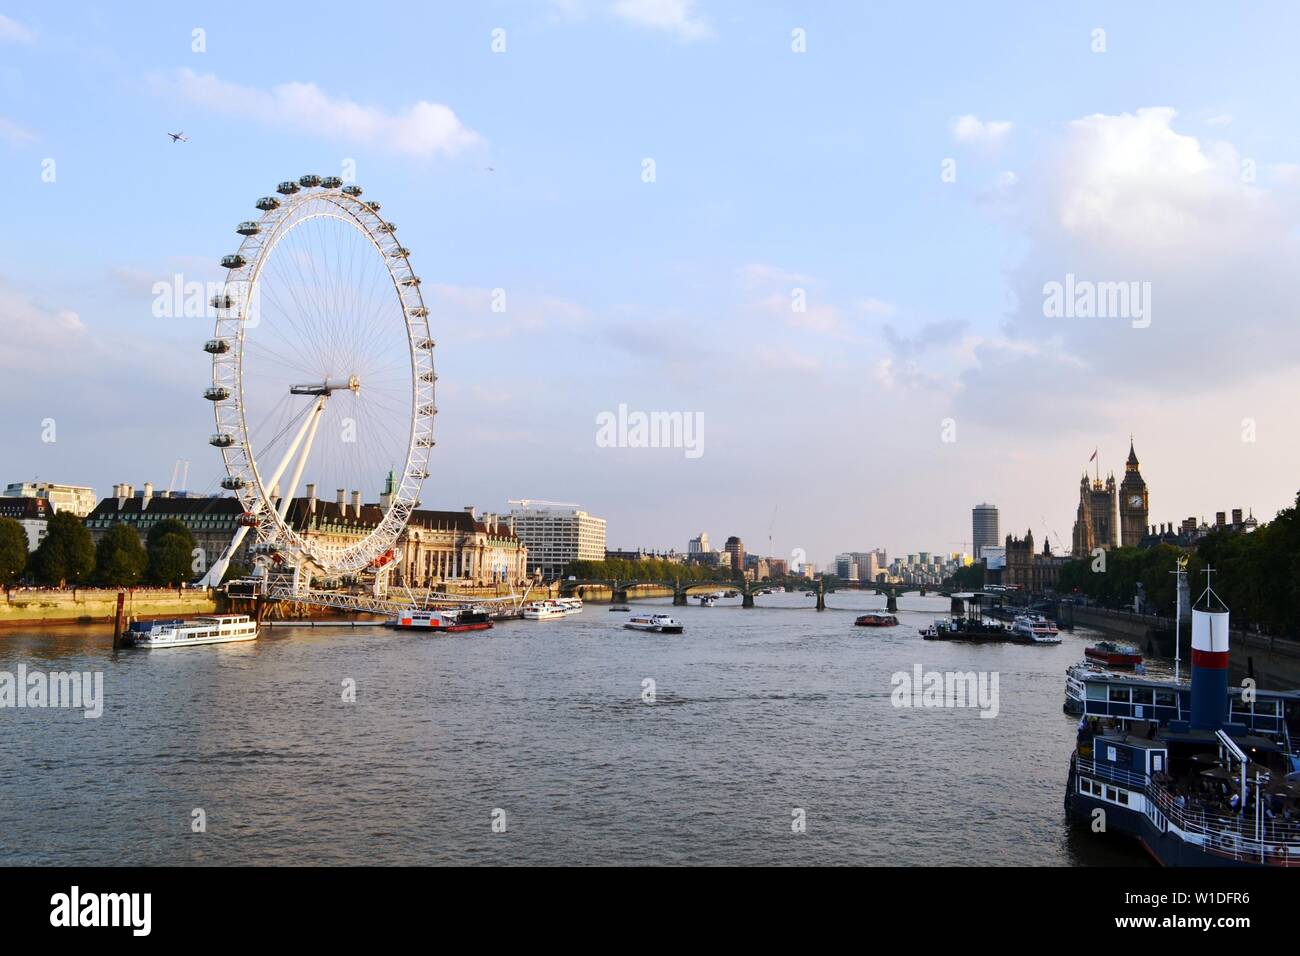 Londres/UK - Septiembre 7, 2014: Vista panorámica al río Támesis, el London Eye, Las Casas del Parlamento, el puente de Westminster, el Big Ben al atardecer. Foto de stock